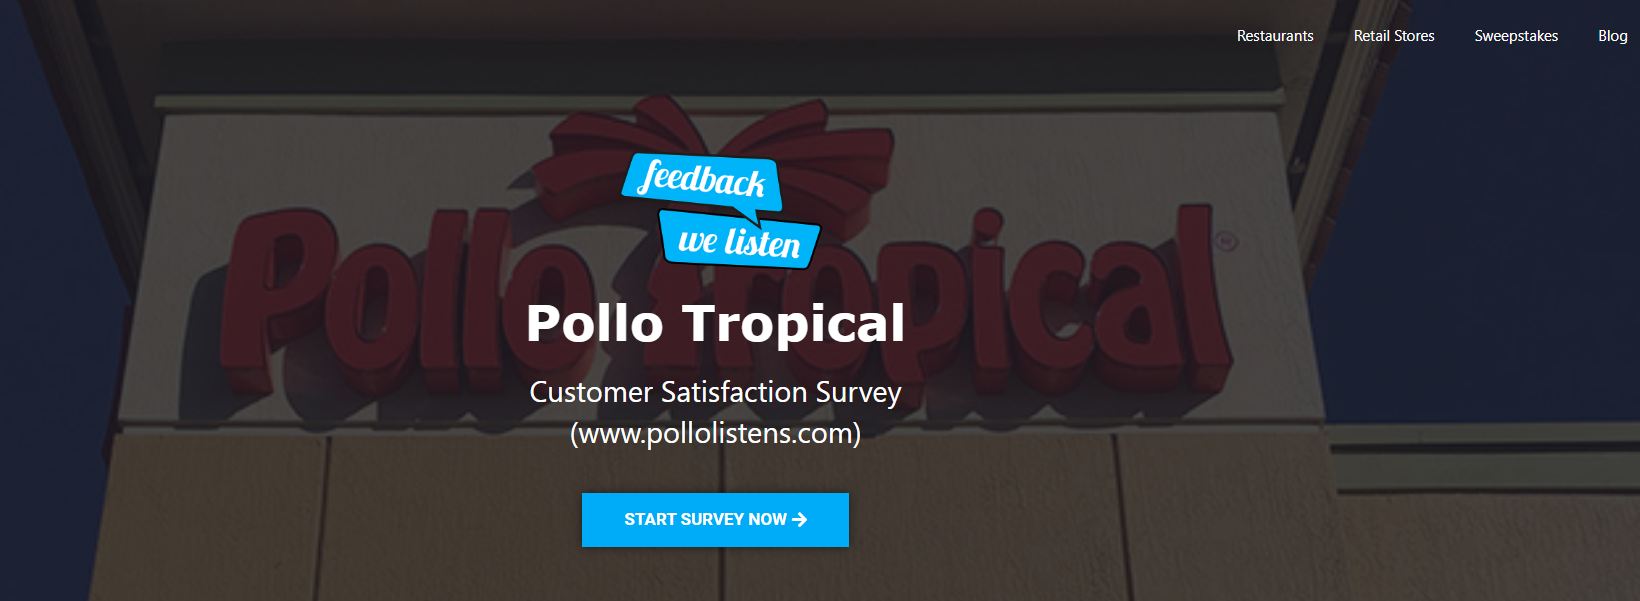 Pollolistens.com - Win $2 OFF - Pollotropical com Survey